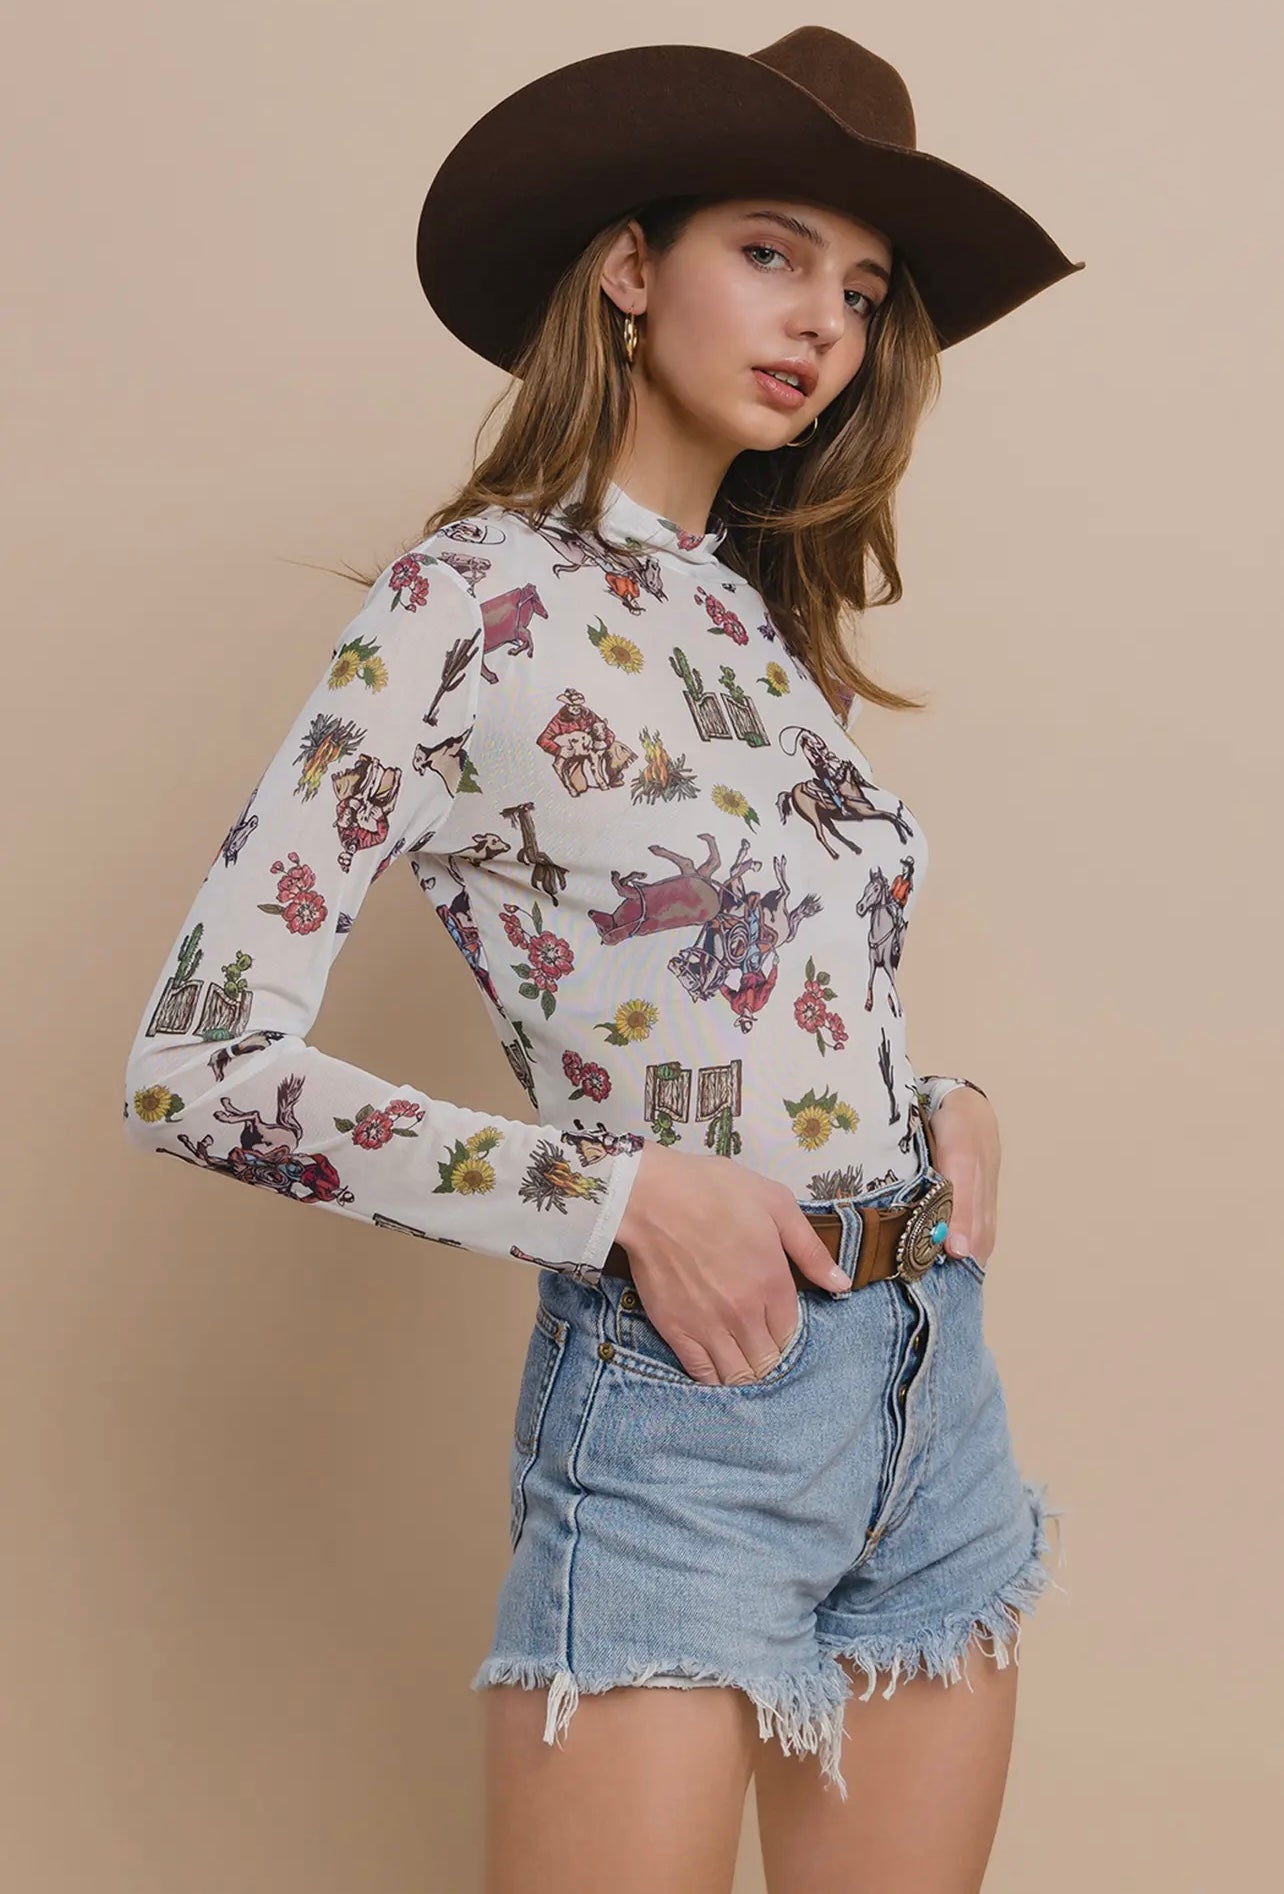 Bella-Western Floral Cowboy
Print Mesh Long Sleeves Top